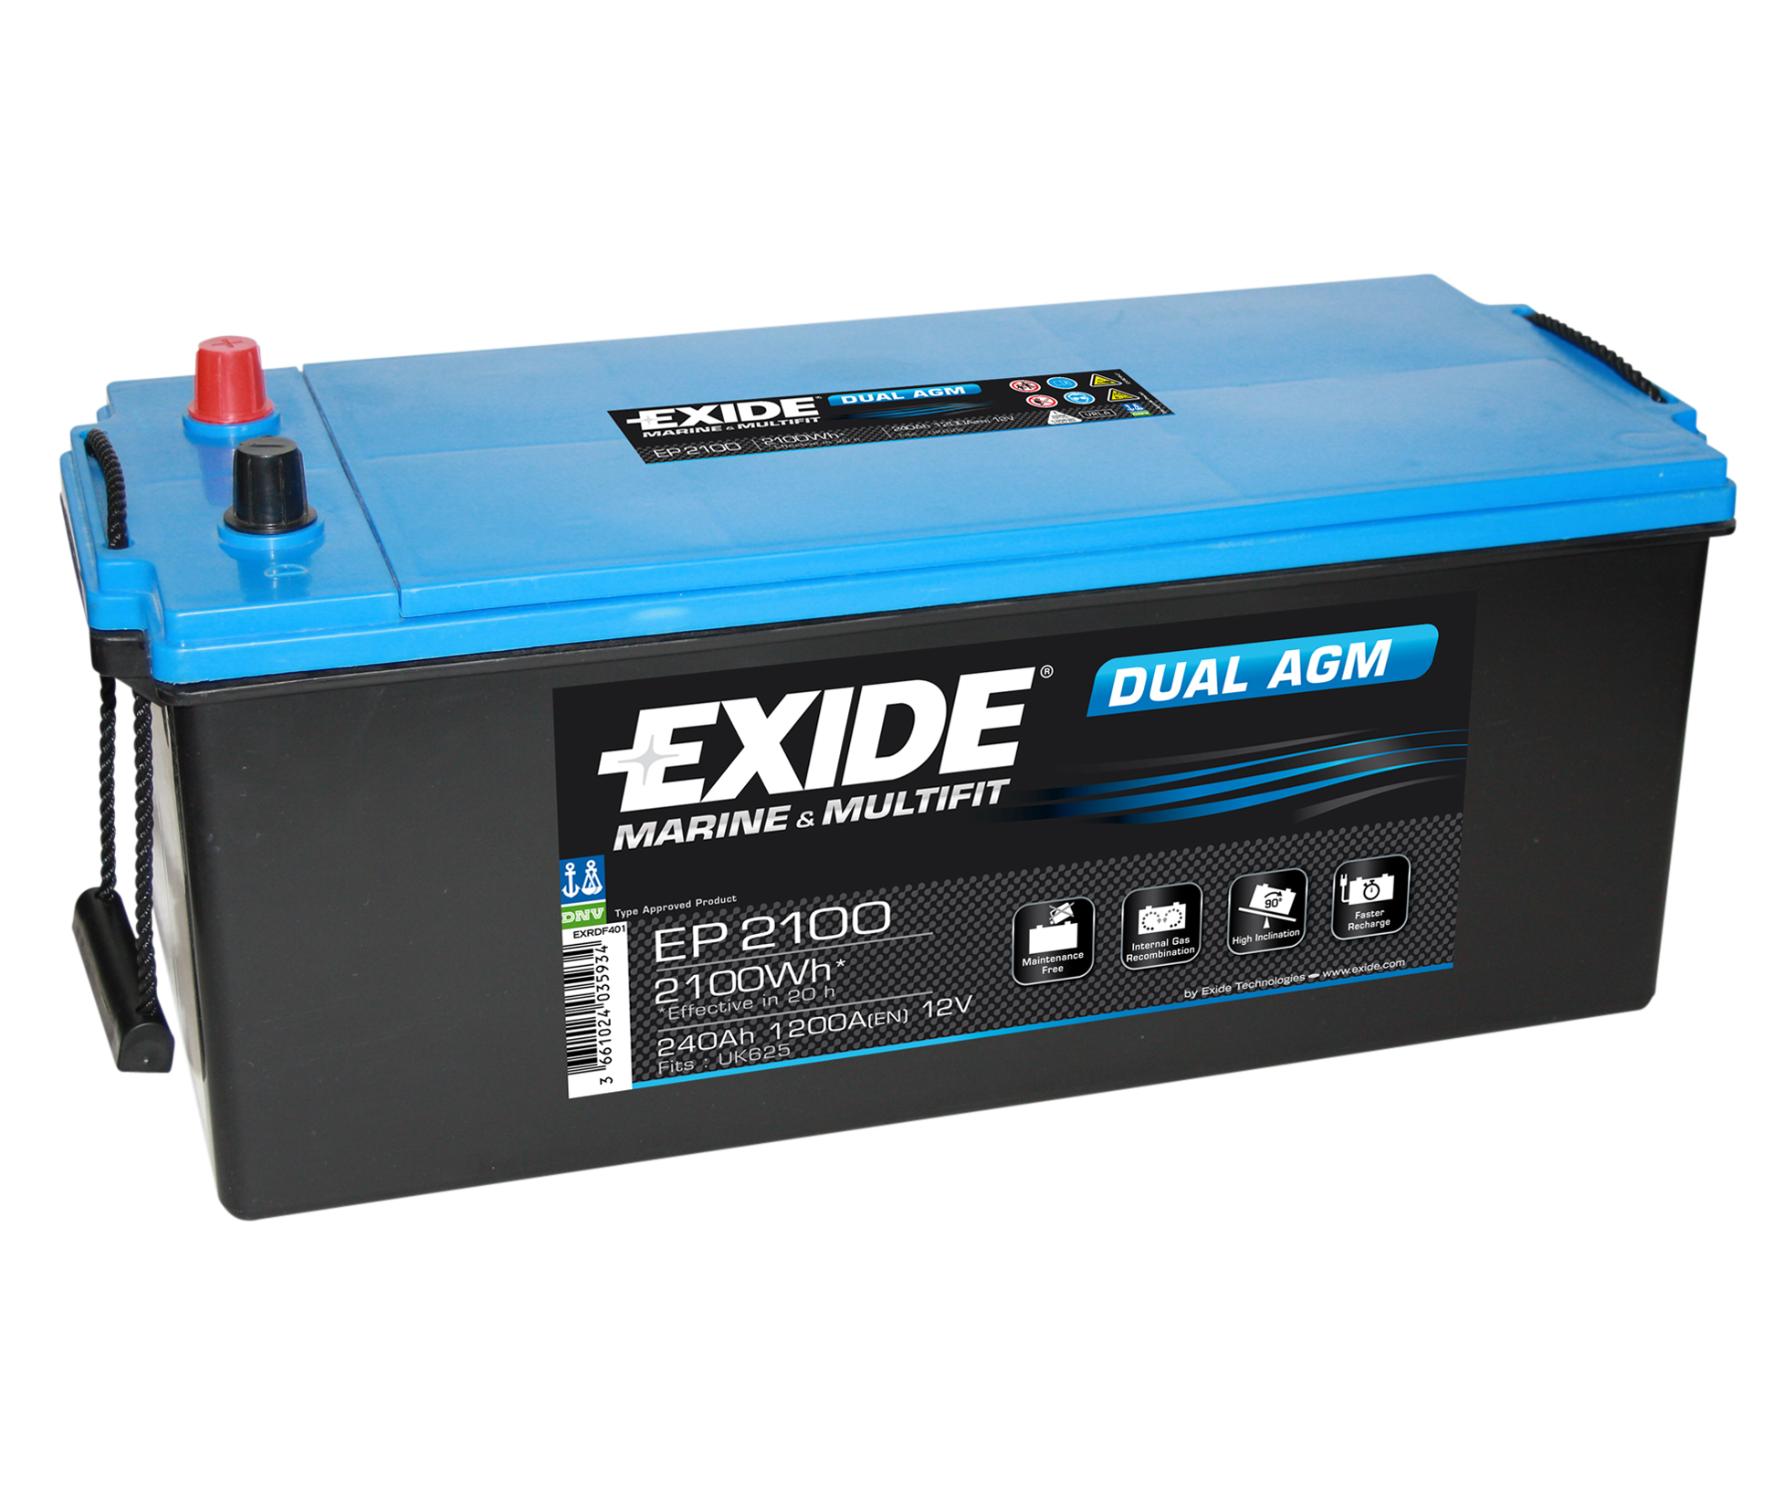 EXIDE Dual AGM EP2100